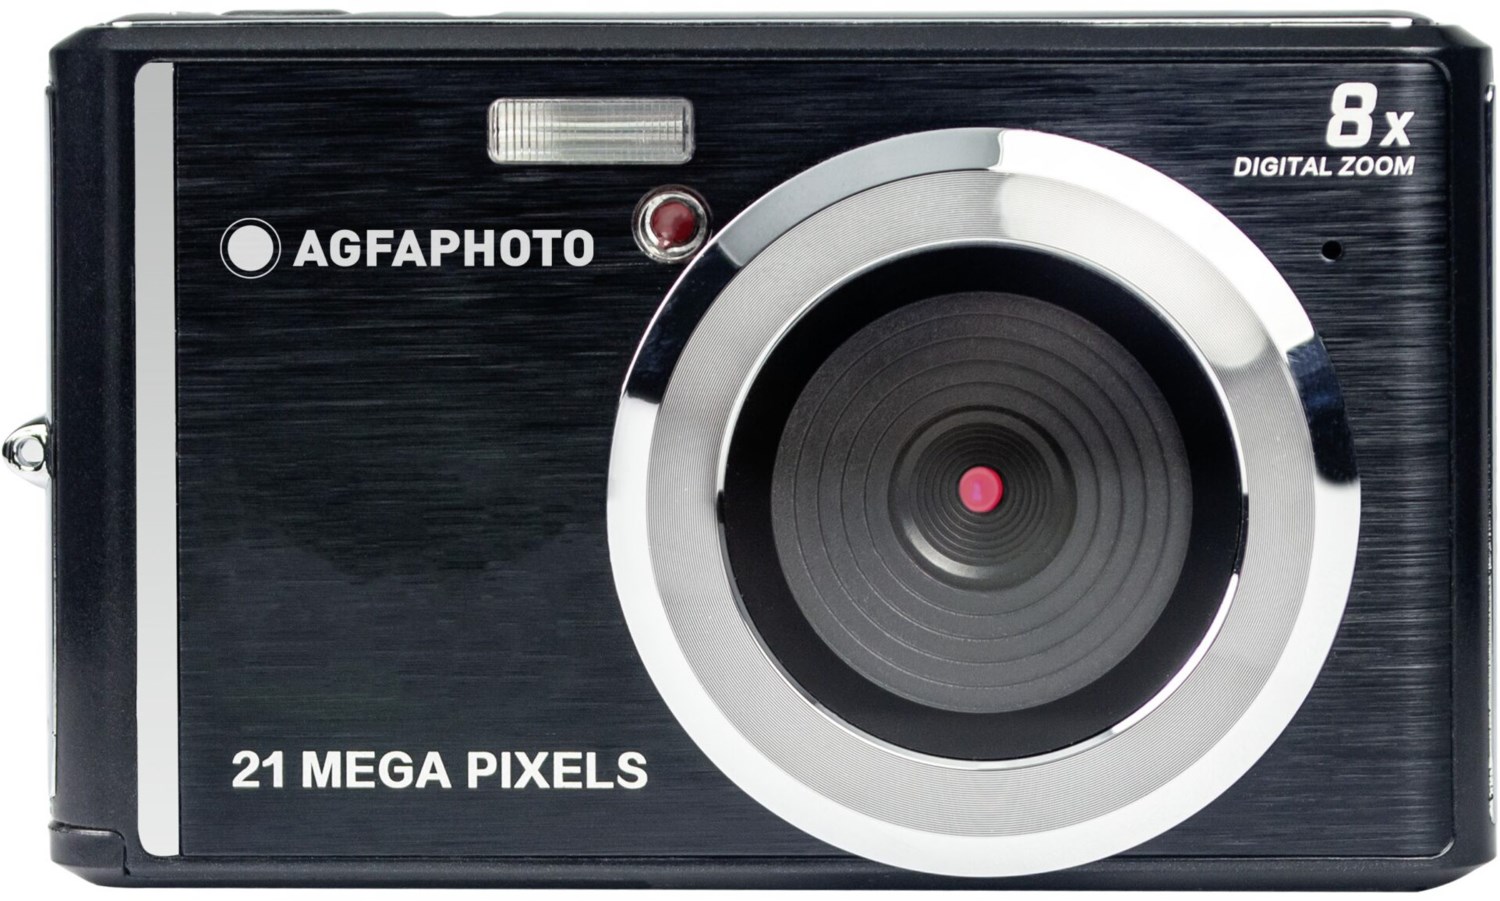 Realishot DC5200 Digitale Kompaktkamera schwarz